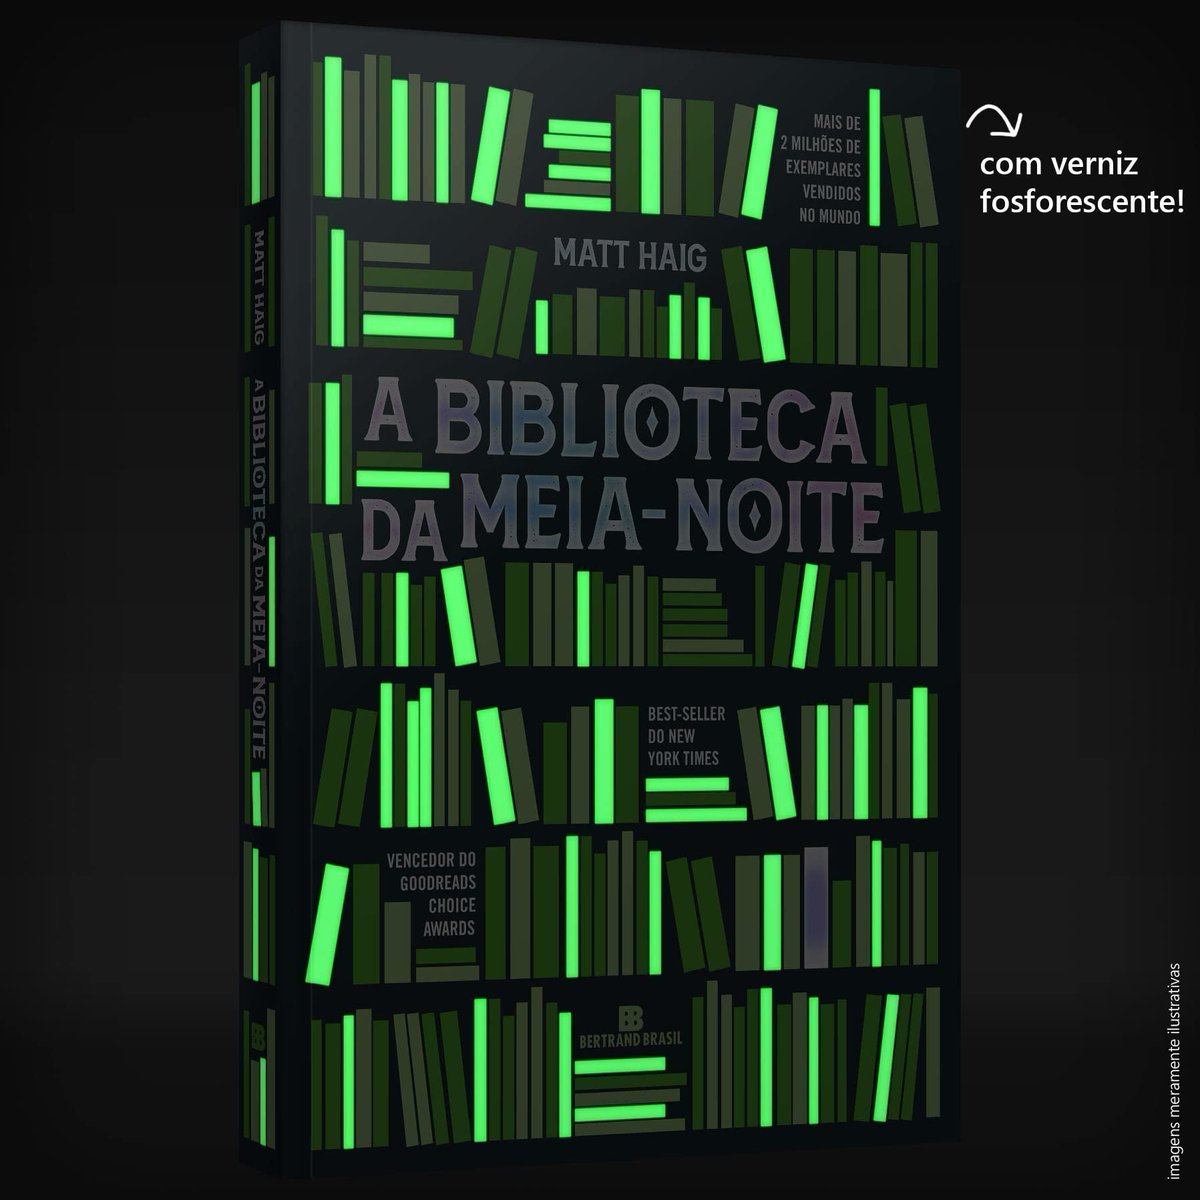 ⚠️ BOOK FRIDAY AMAZON A Biblioteca Da Meia-Noite - capa comum, brilha no escuro 💵 R$ 29,90 🚚 Frete Grátis Prime 🛒 amzn.to/3ynldxP